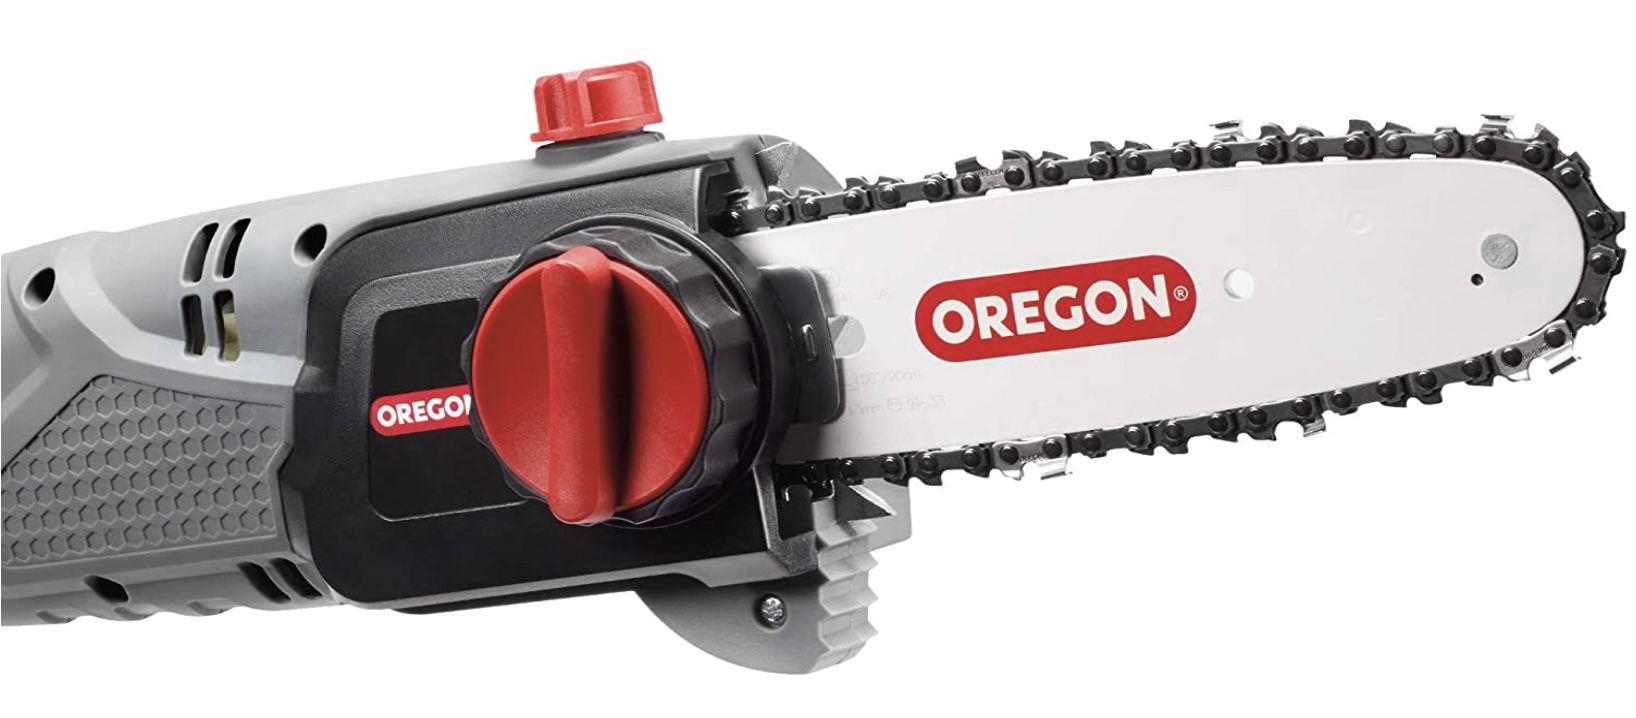 Oregon PS750 230V elektrische Säge mit Teleskopstange für 70,35€ (statt 95€)